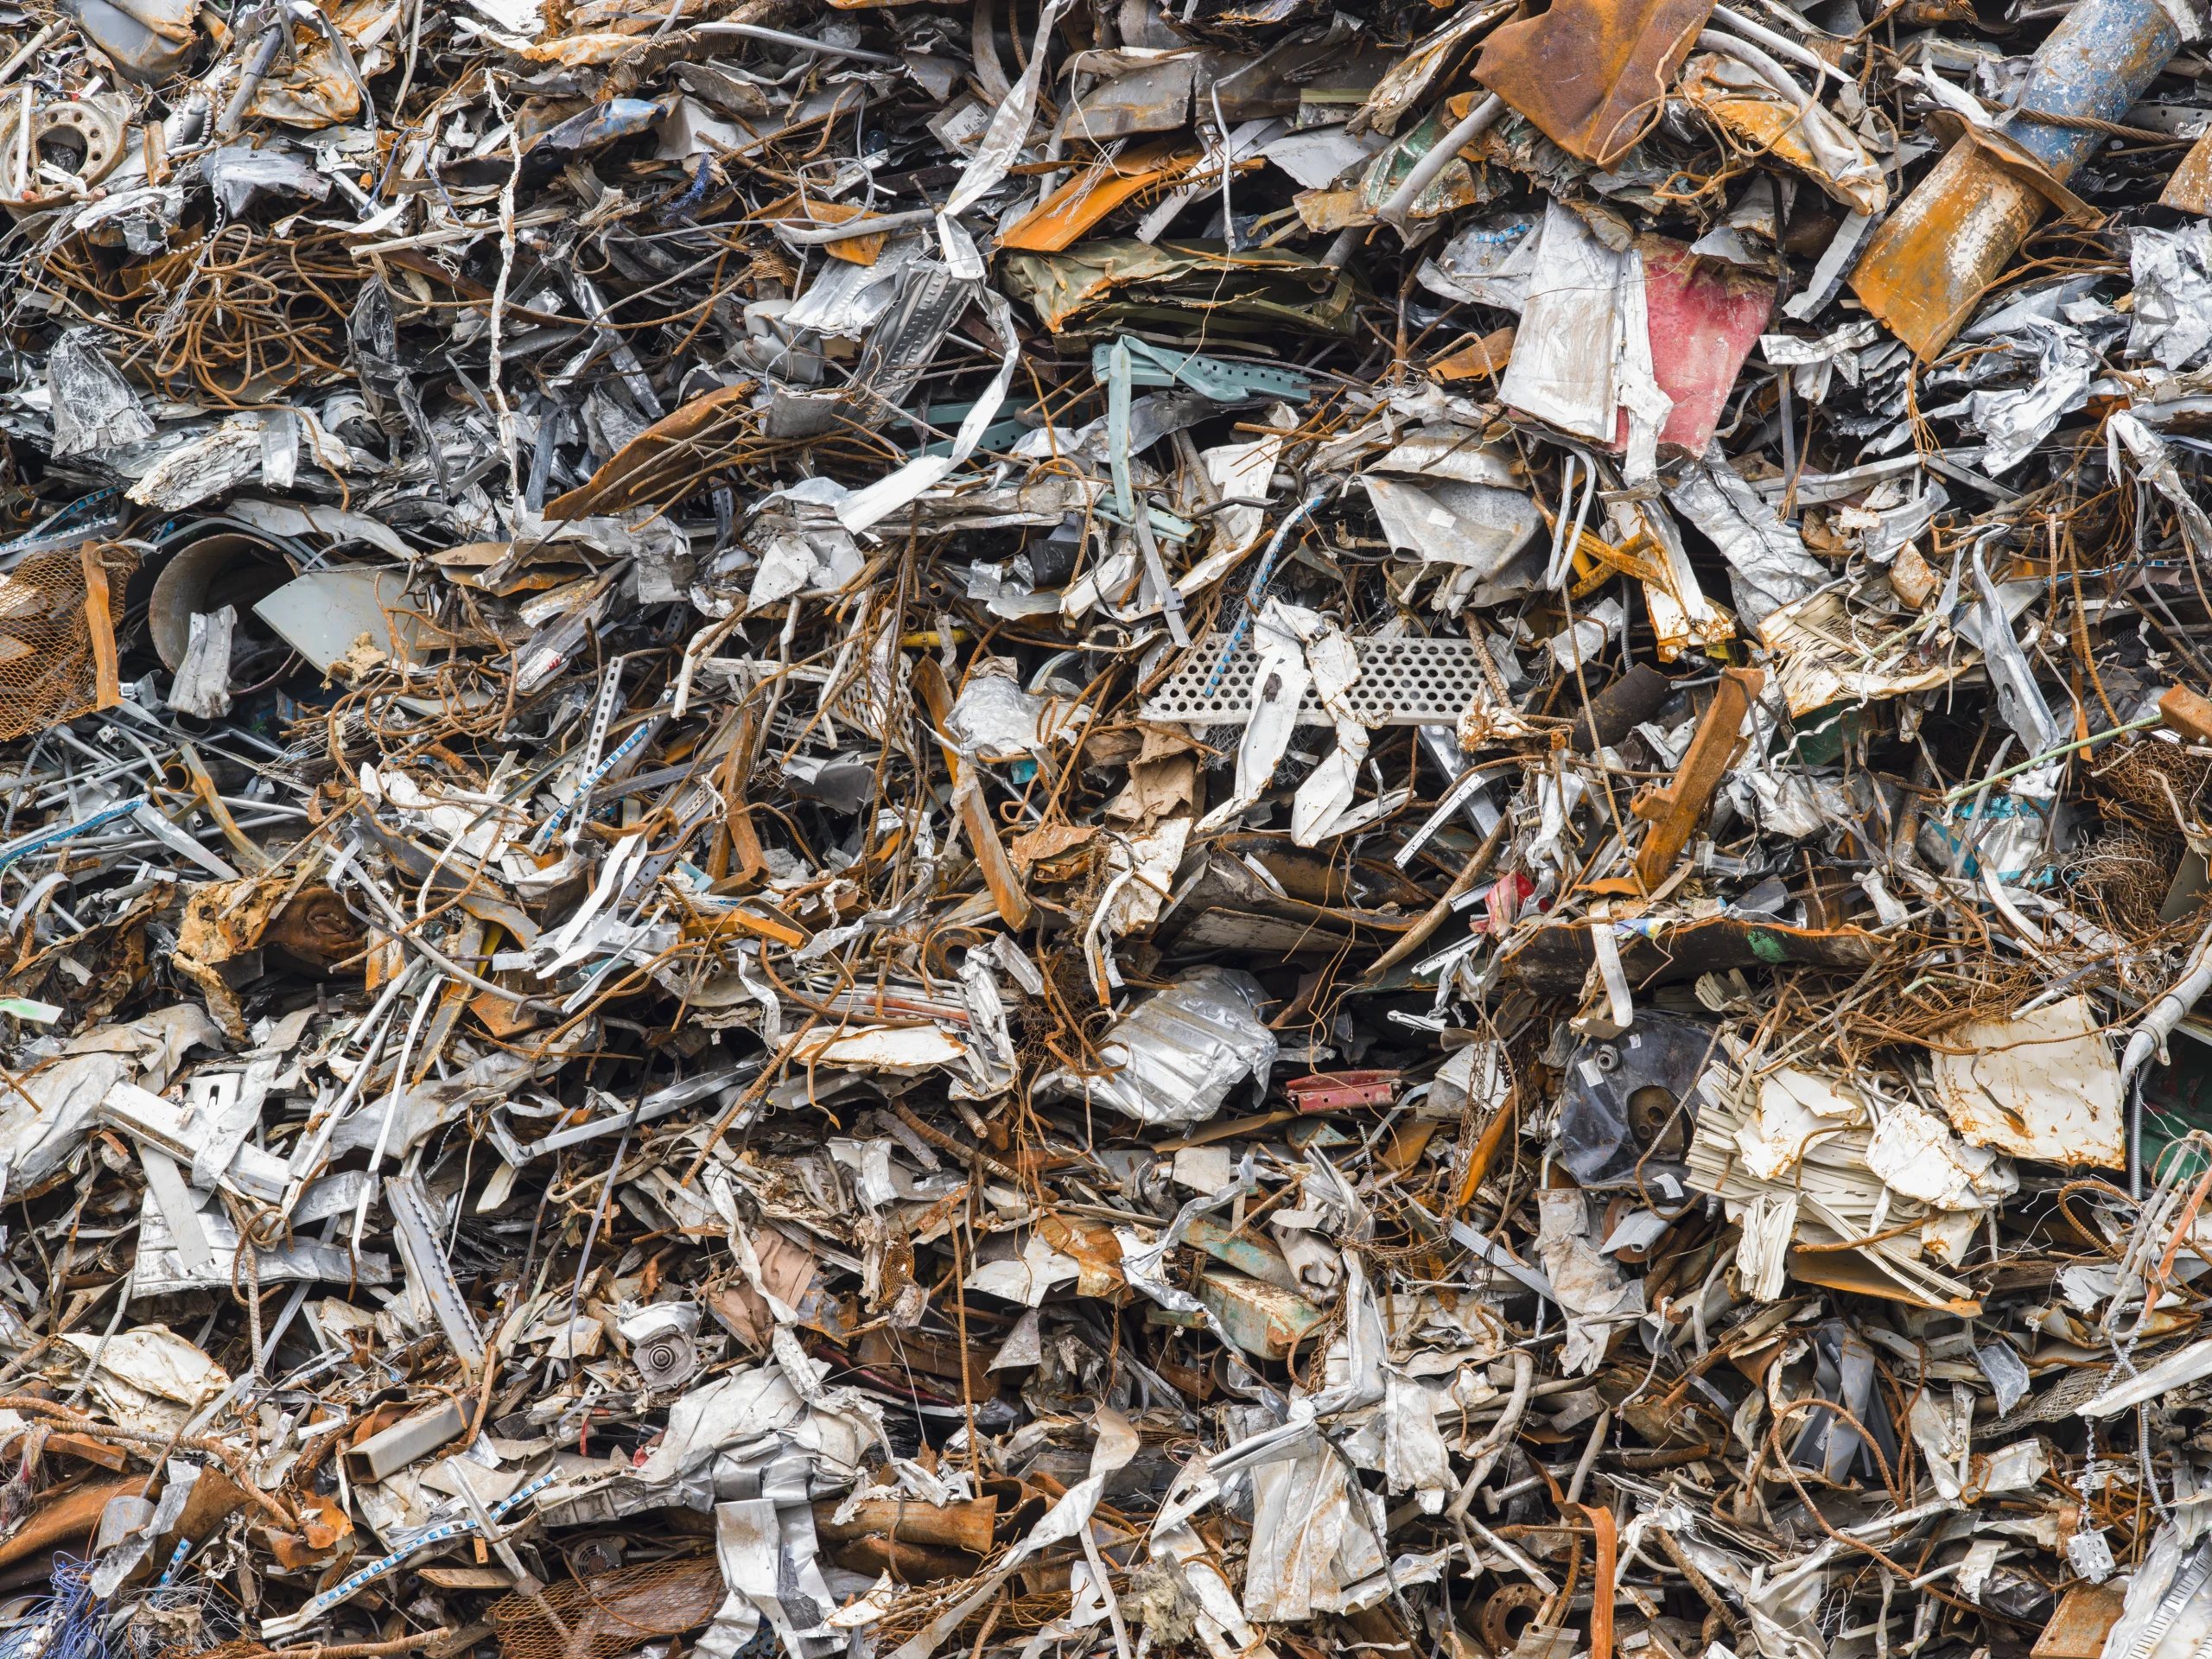 a-heap-of-scrap-metal-for-recycling-2022-03-04-02-29-41-utc (1)